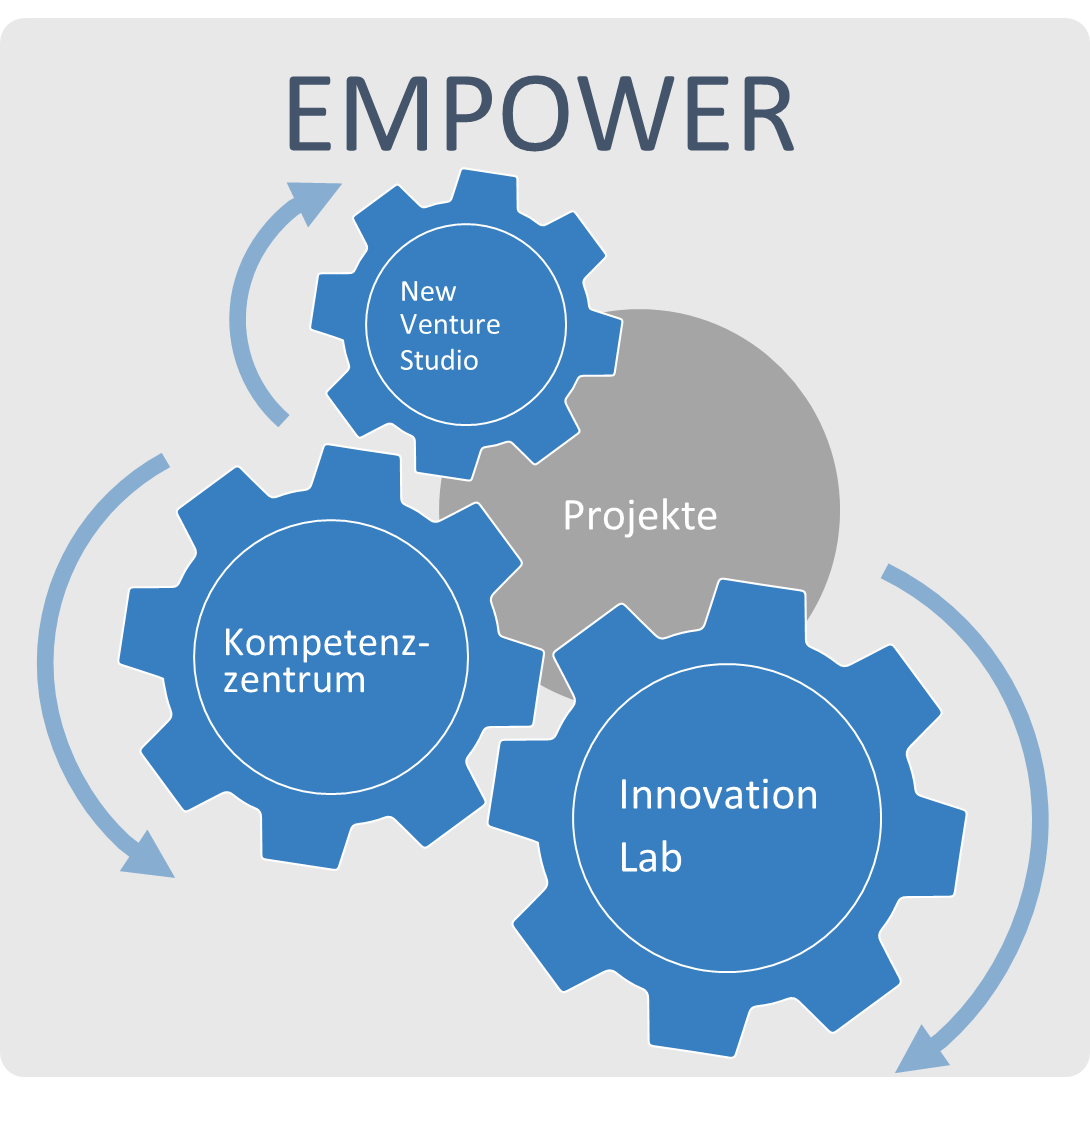 Grafik mit Zahnrädern zur Darstellung des Transferbündnisses zwischen den Empower-Projekten, dem Innovation Lab, dem Kompetenzzentrum und dem New Venture Studio